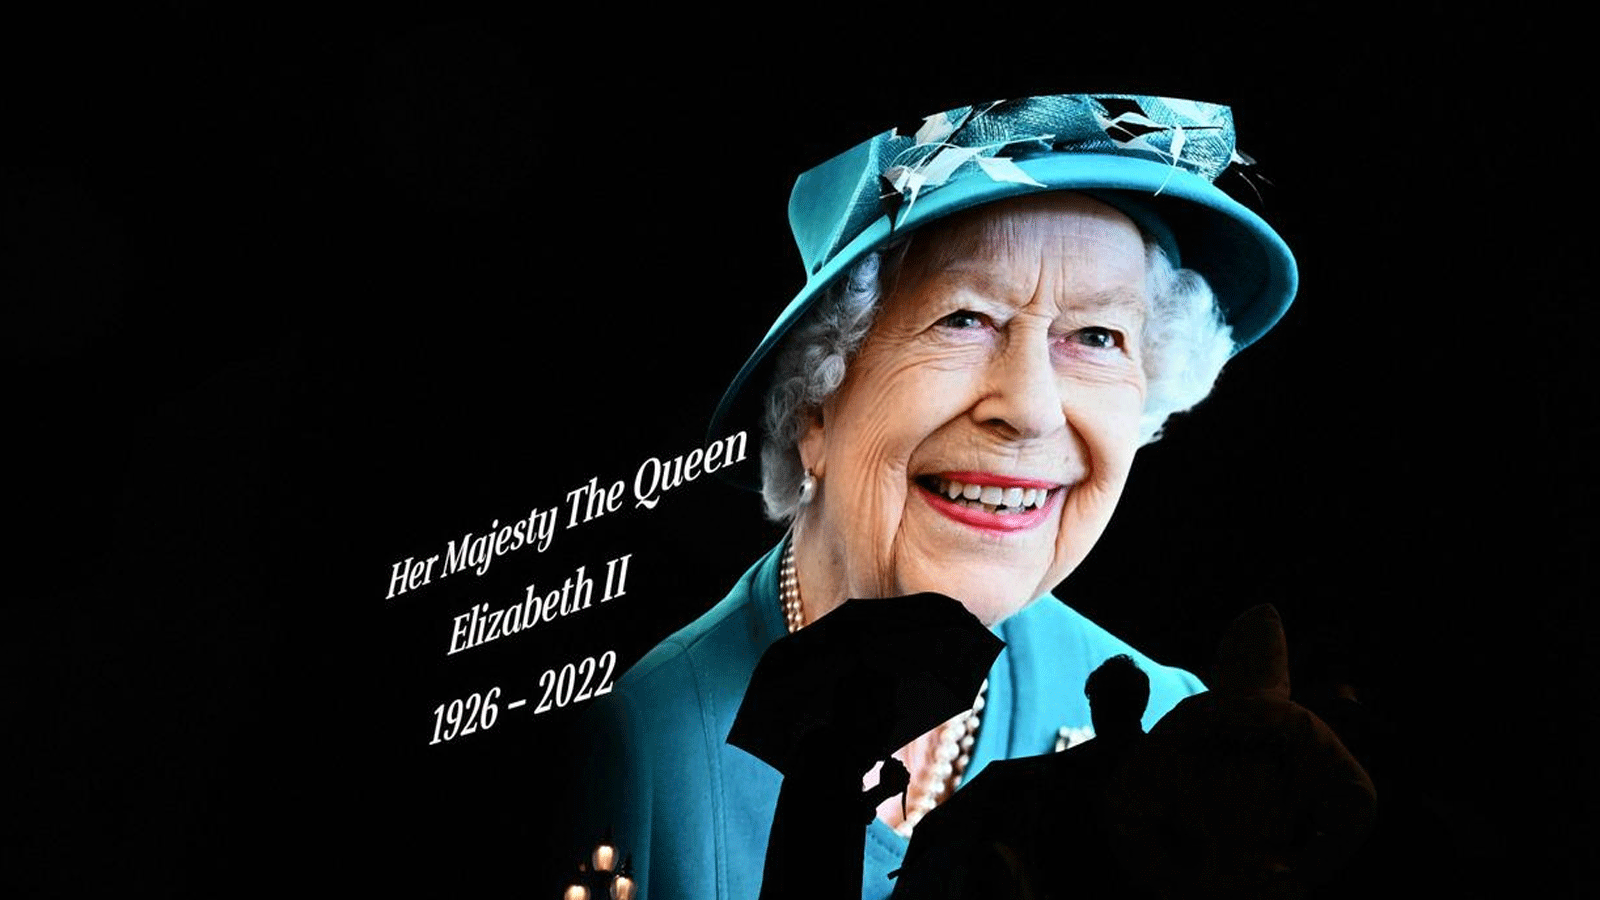 أرقام قياسية لافتة بحياة الملكة إليزابيث الثانية